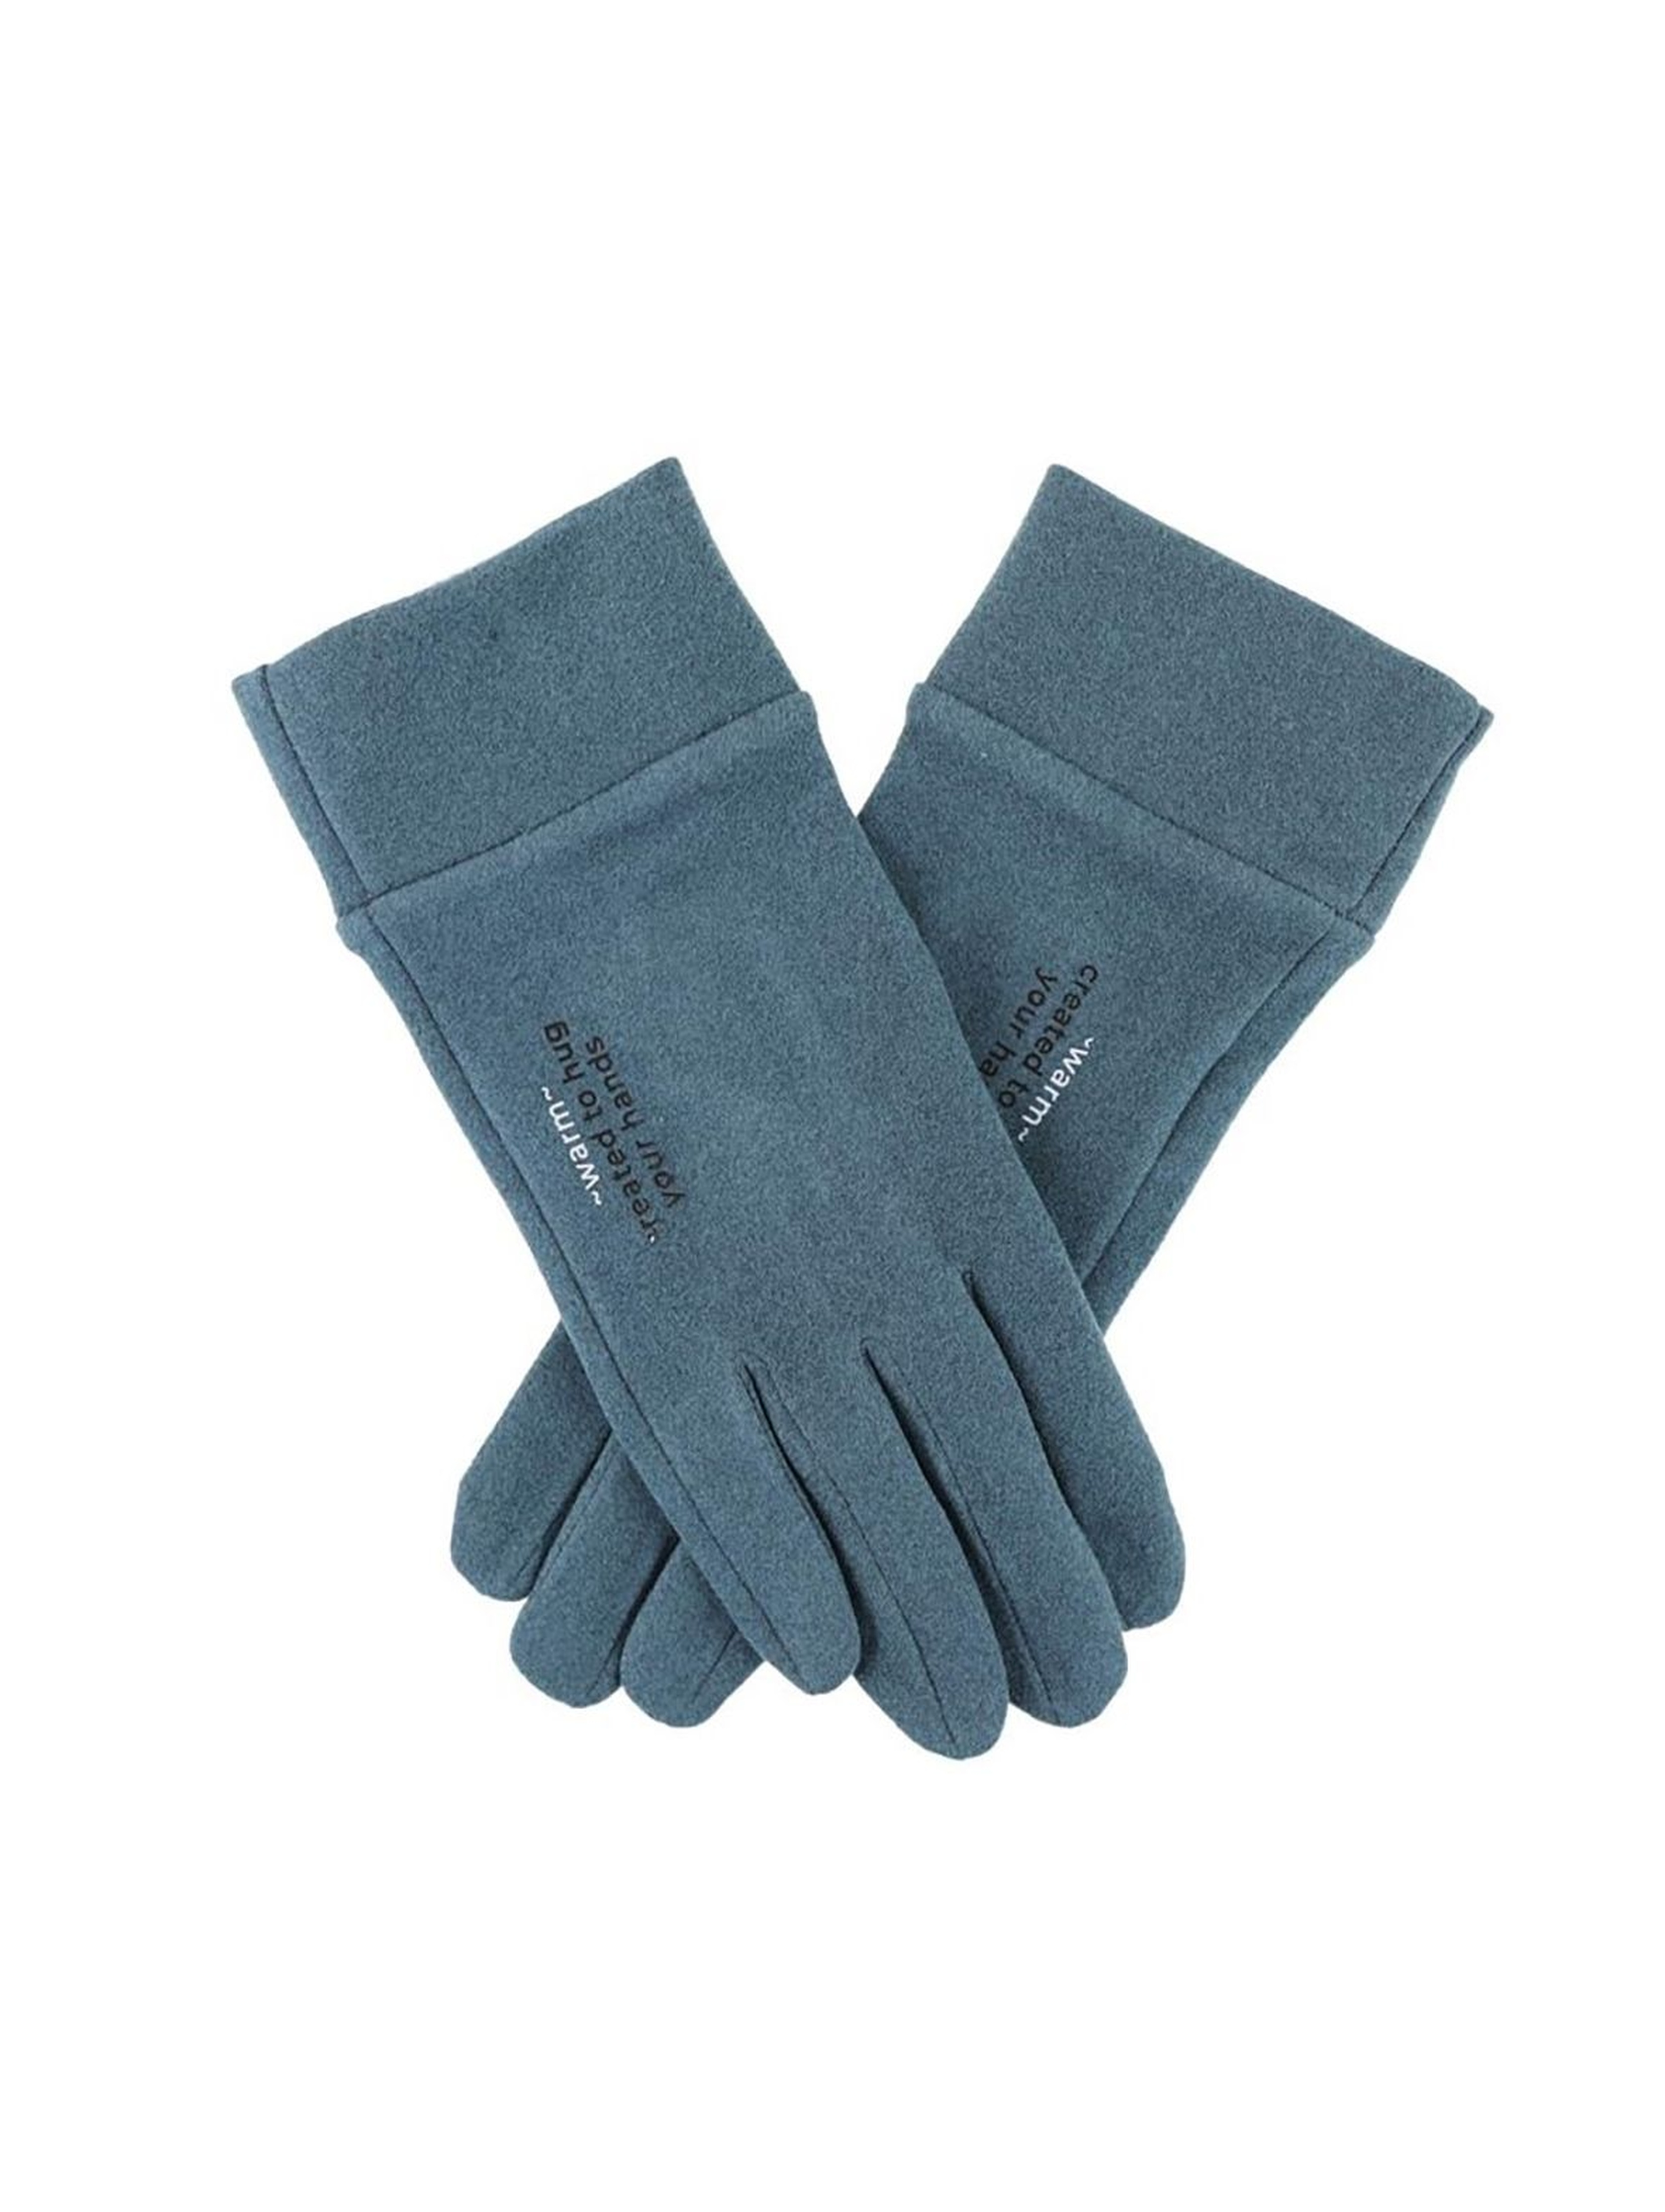 Rękawiczki damskie - niebieskie